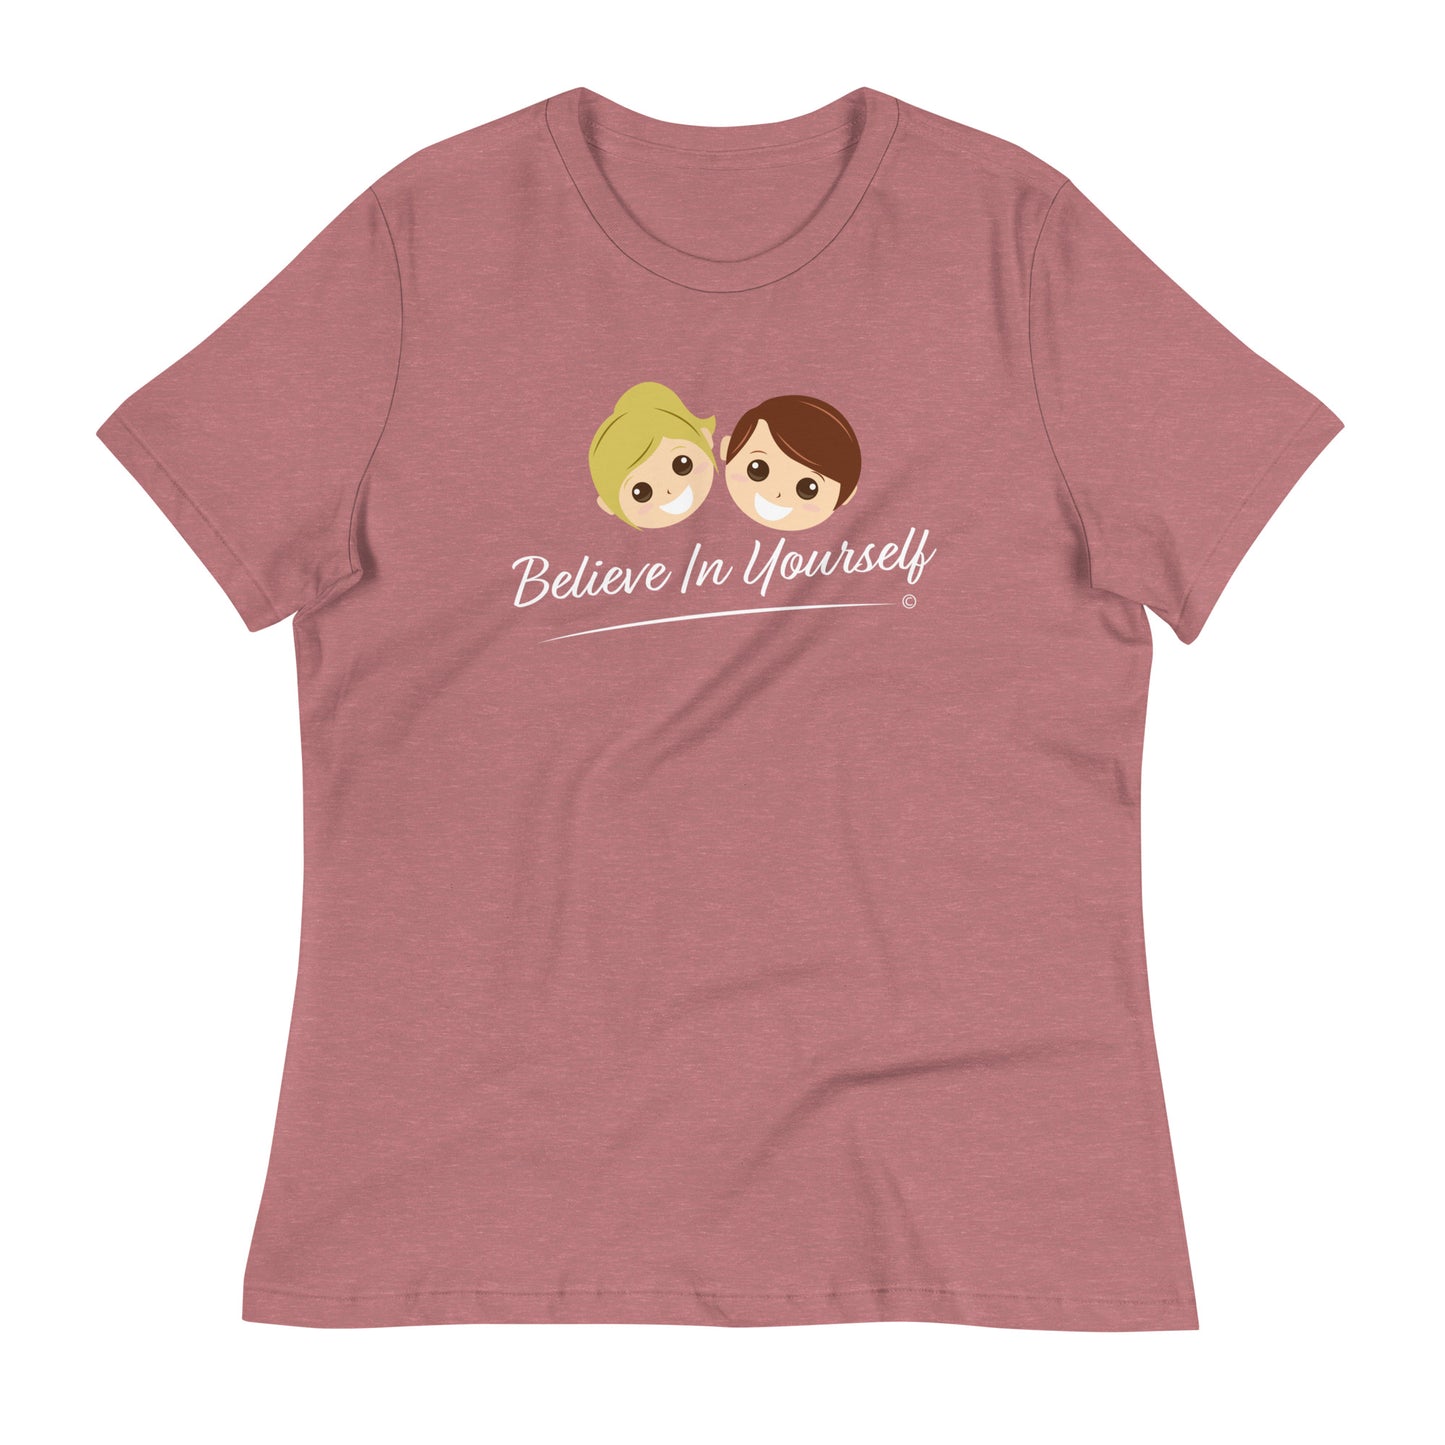 Premium ladies' T-shirts- heather Mauve